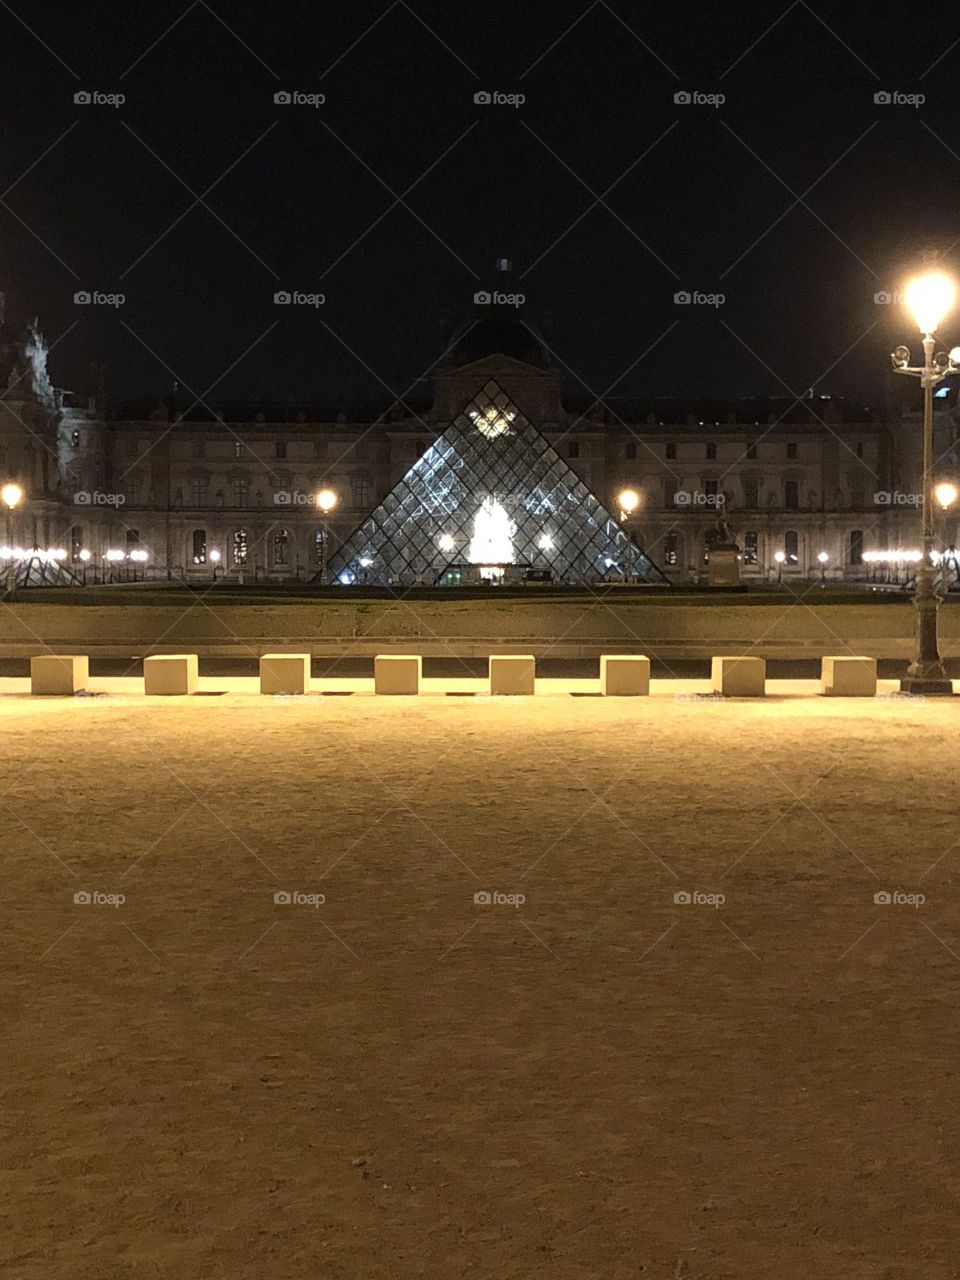 Pyramid musée du louvres paris France 